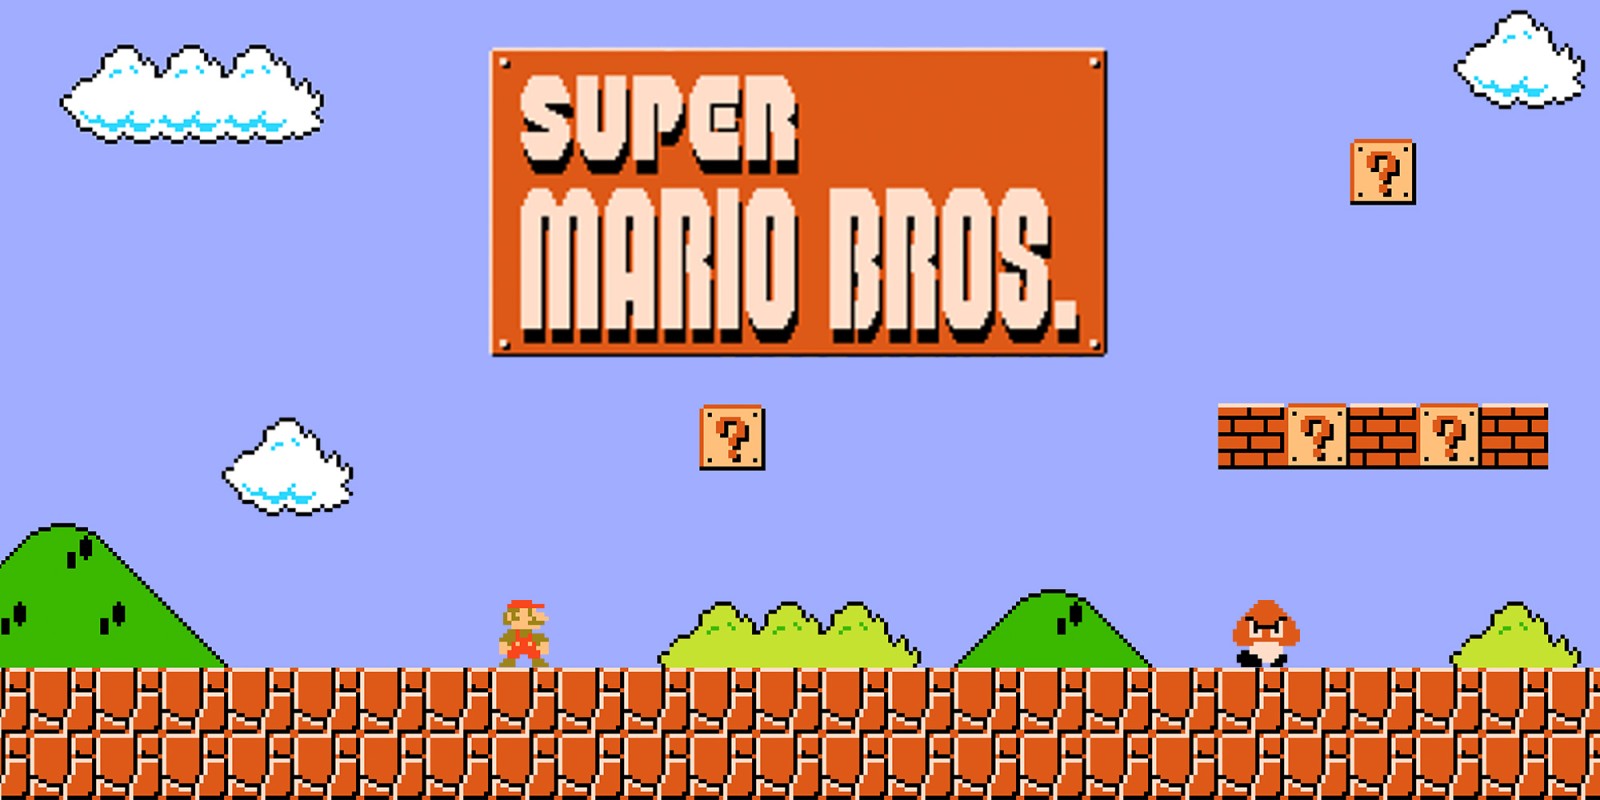 El nivel de una industria ejemplificado por Super Mario Bros.